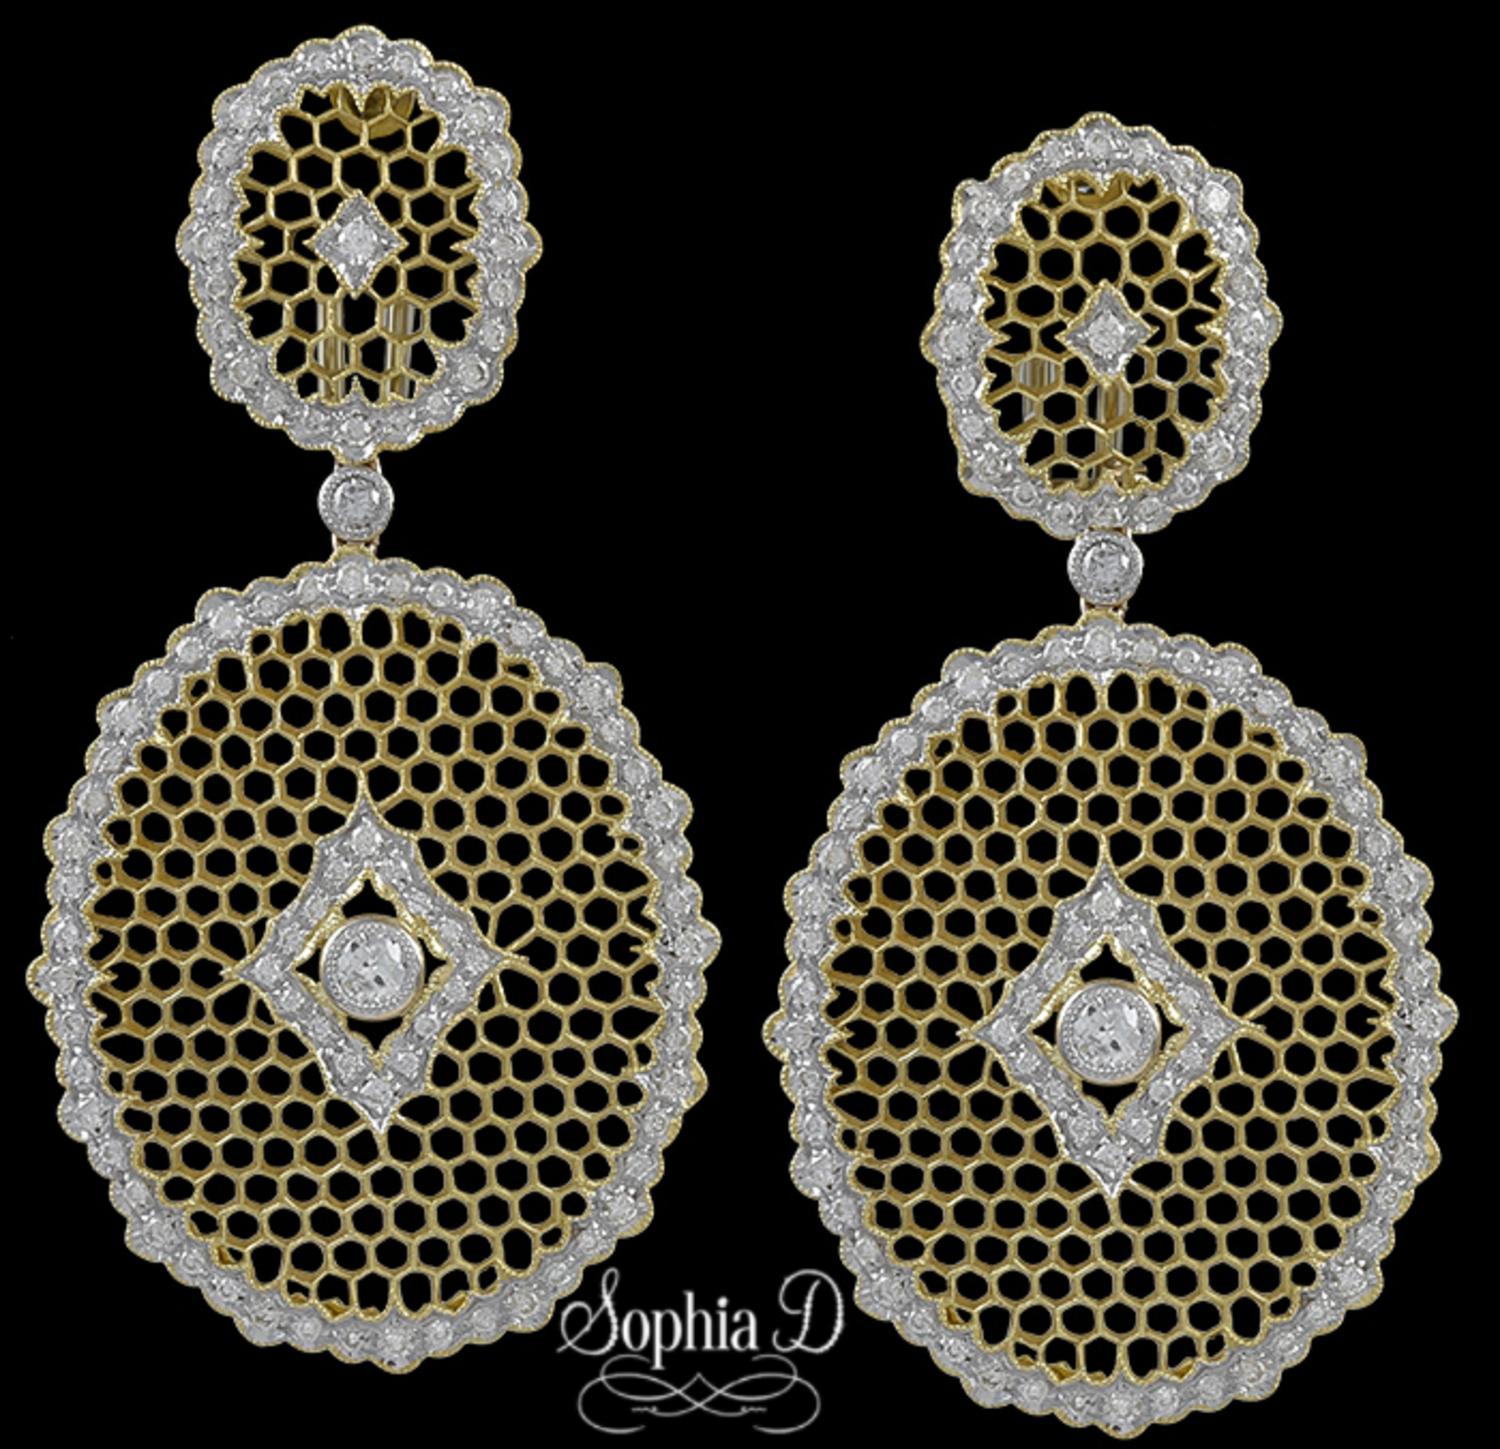  Sophia D Ohrringe aus 18 Karat Gelbgold mit 2,08 Karat Diamanten.

Sophia D von Joseph Dardashti LTD ist seit 35 Jahren weltweit bekannt und lässt sich vom klassischen Art-Déco-Design inspirieren, das mit modernen Fertigungstechniken verschmilzt.